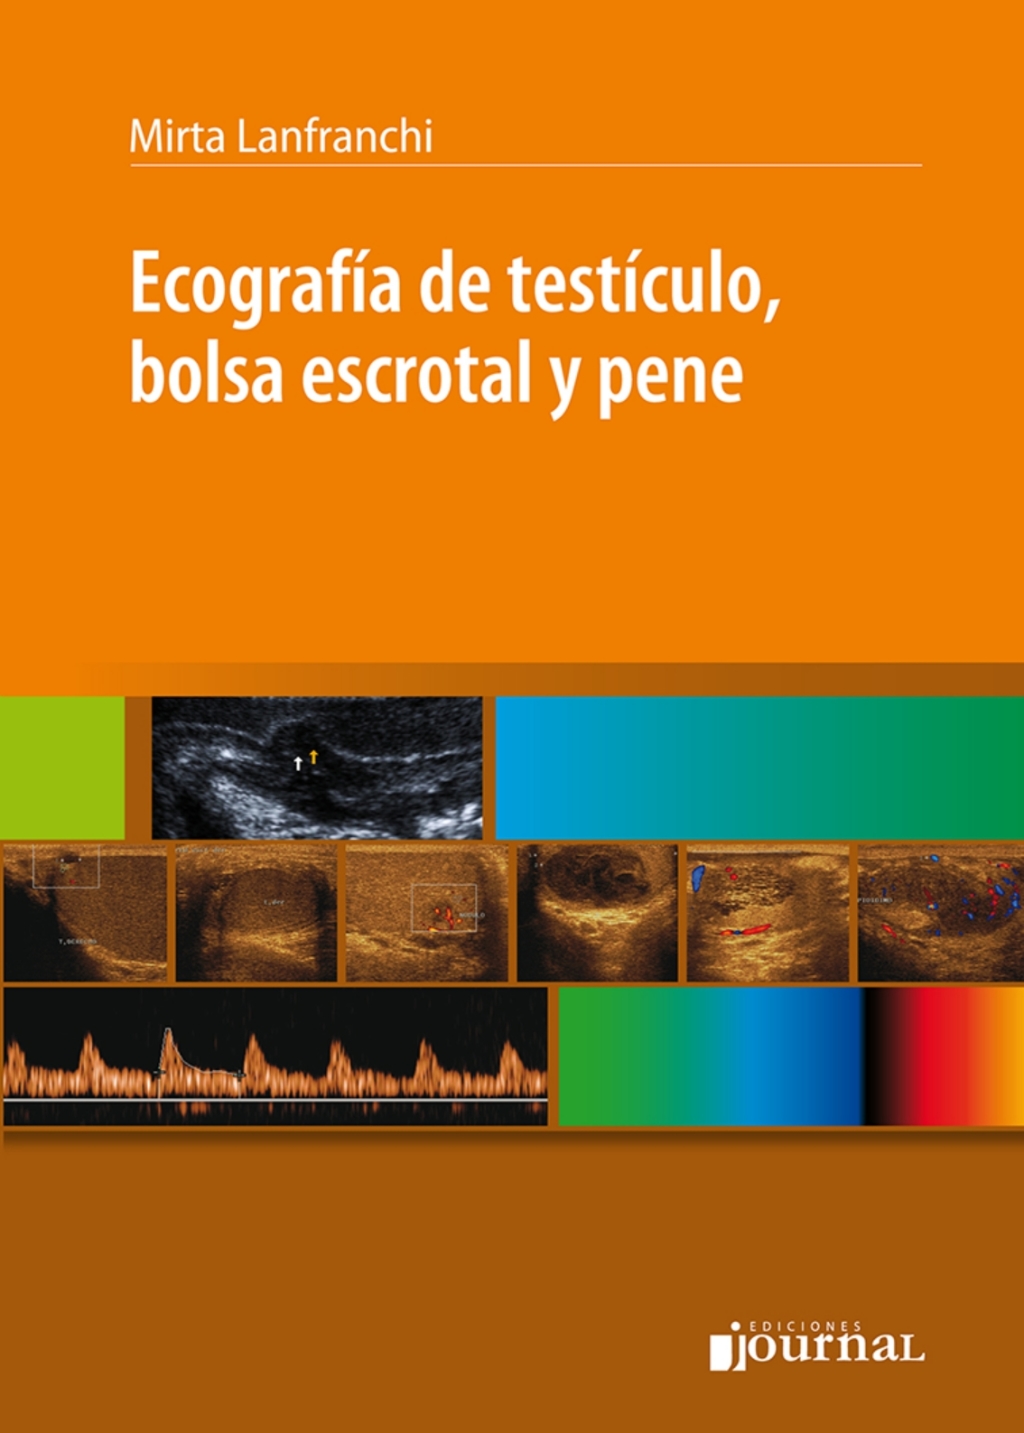 ecografia de testiculo bolsa escrotal y pene high quality image pdf 63a219ce87e3f | Medical Books & CME Courses